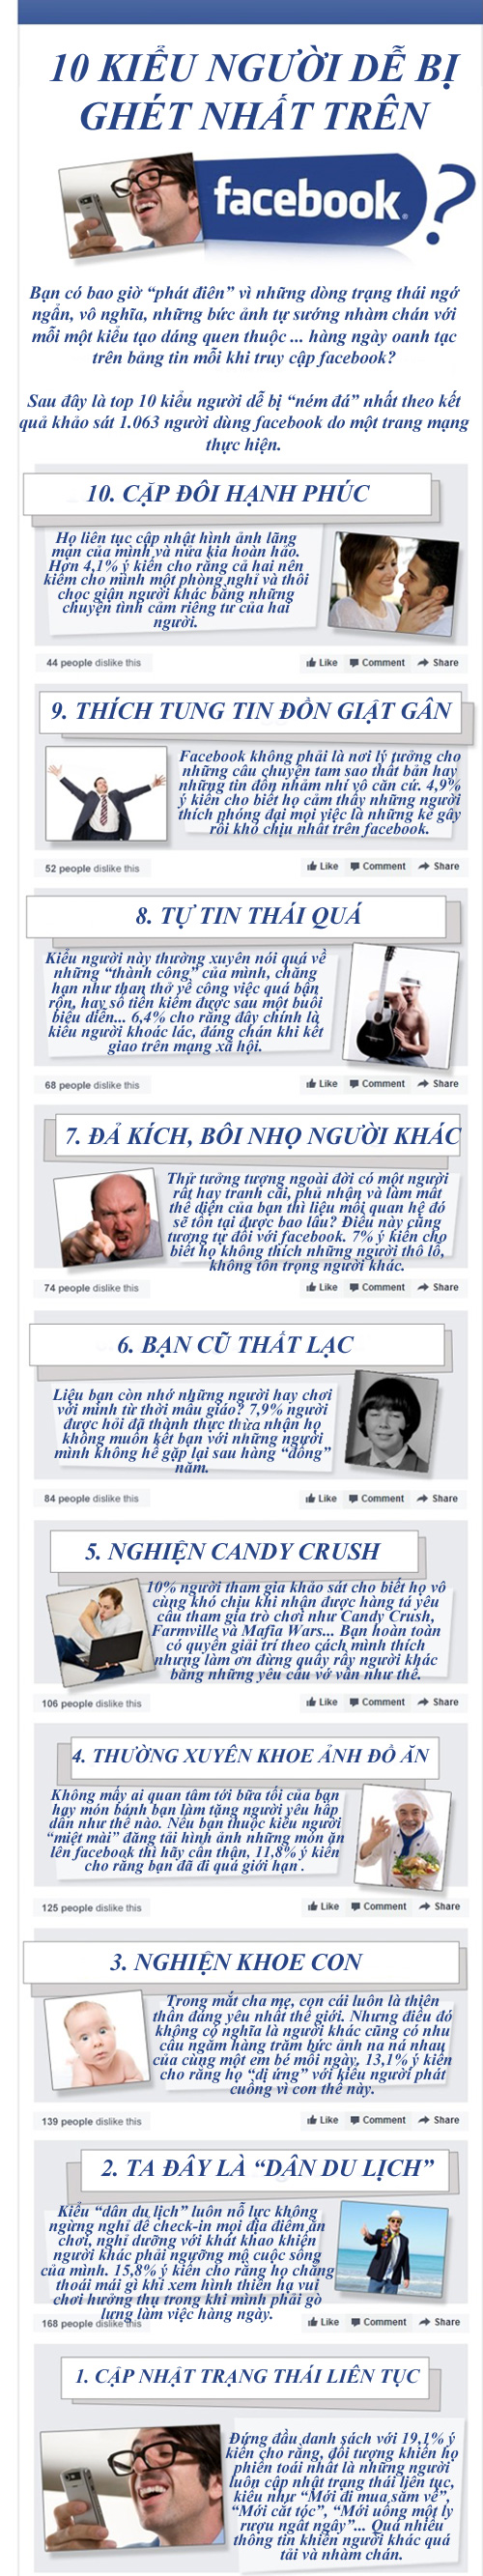 10 kiểu người dùng dễ bị ghét trên Facebook 1